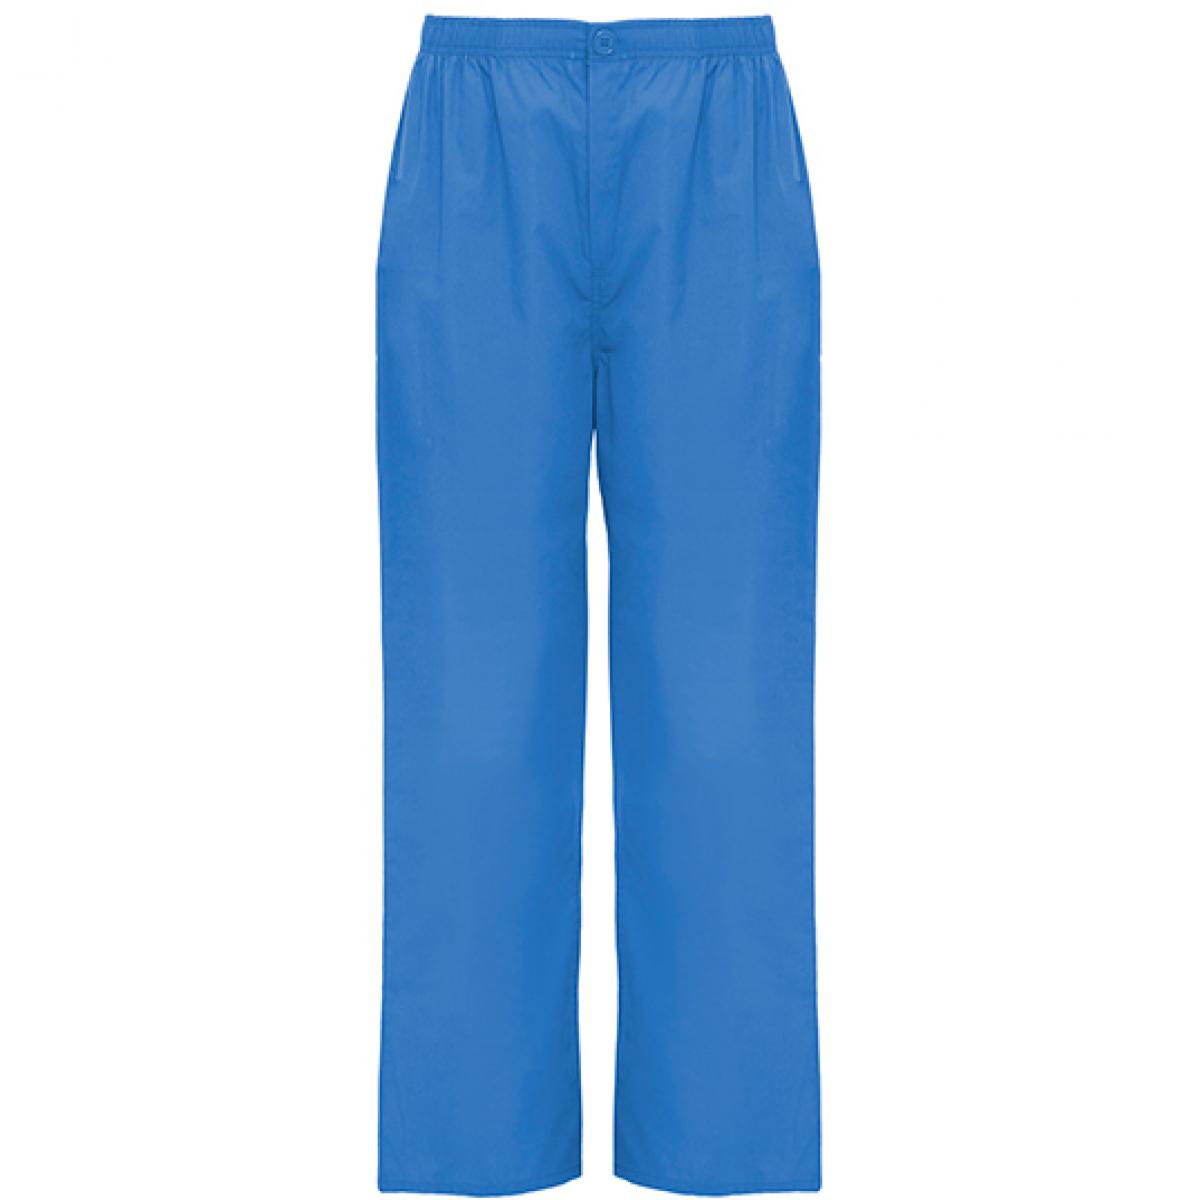 Hersteller: Roly Workwear Herstellernummer: PA9097 Artikelbezeichnung: Vademecum Pull on trousers - Pfegerhose Farbe: Lab Blue 44